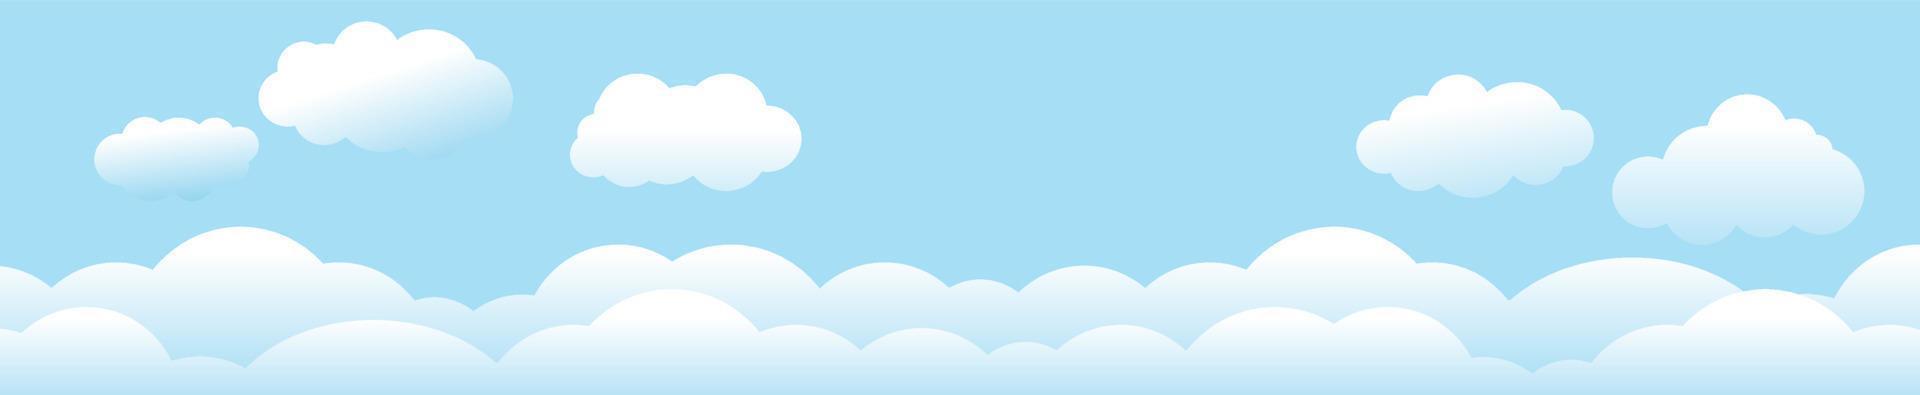 nuages et ciel, fond nature météo, bannière horizontale, illustration vectorielle. vecteur